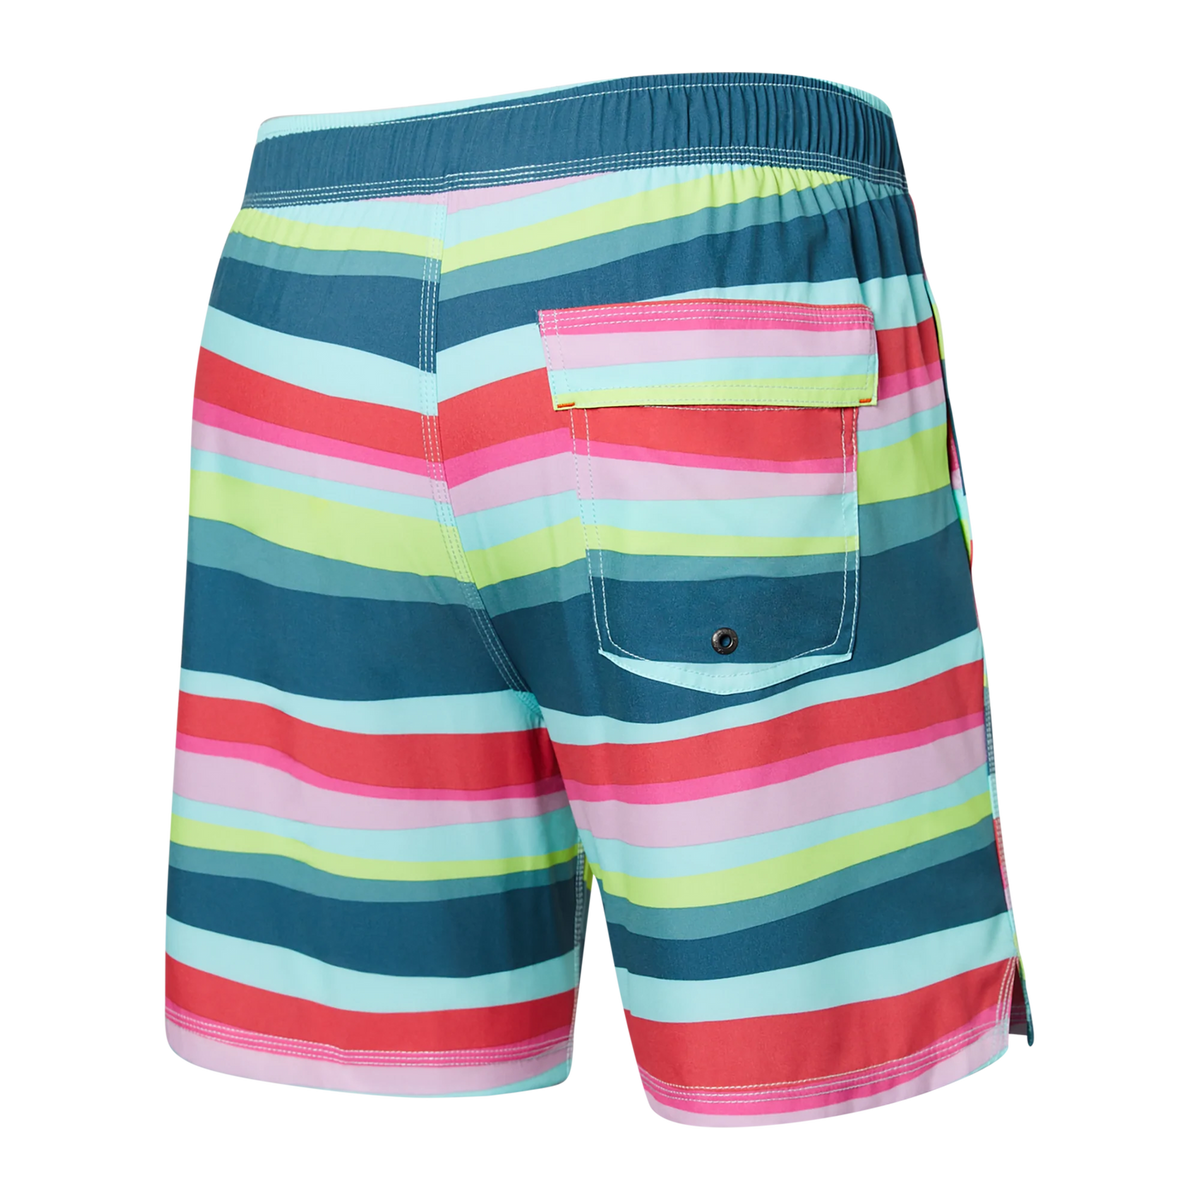 Saxx Oh Buoy 2N1 Swim Shorts 7"